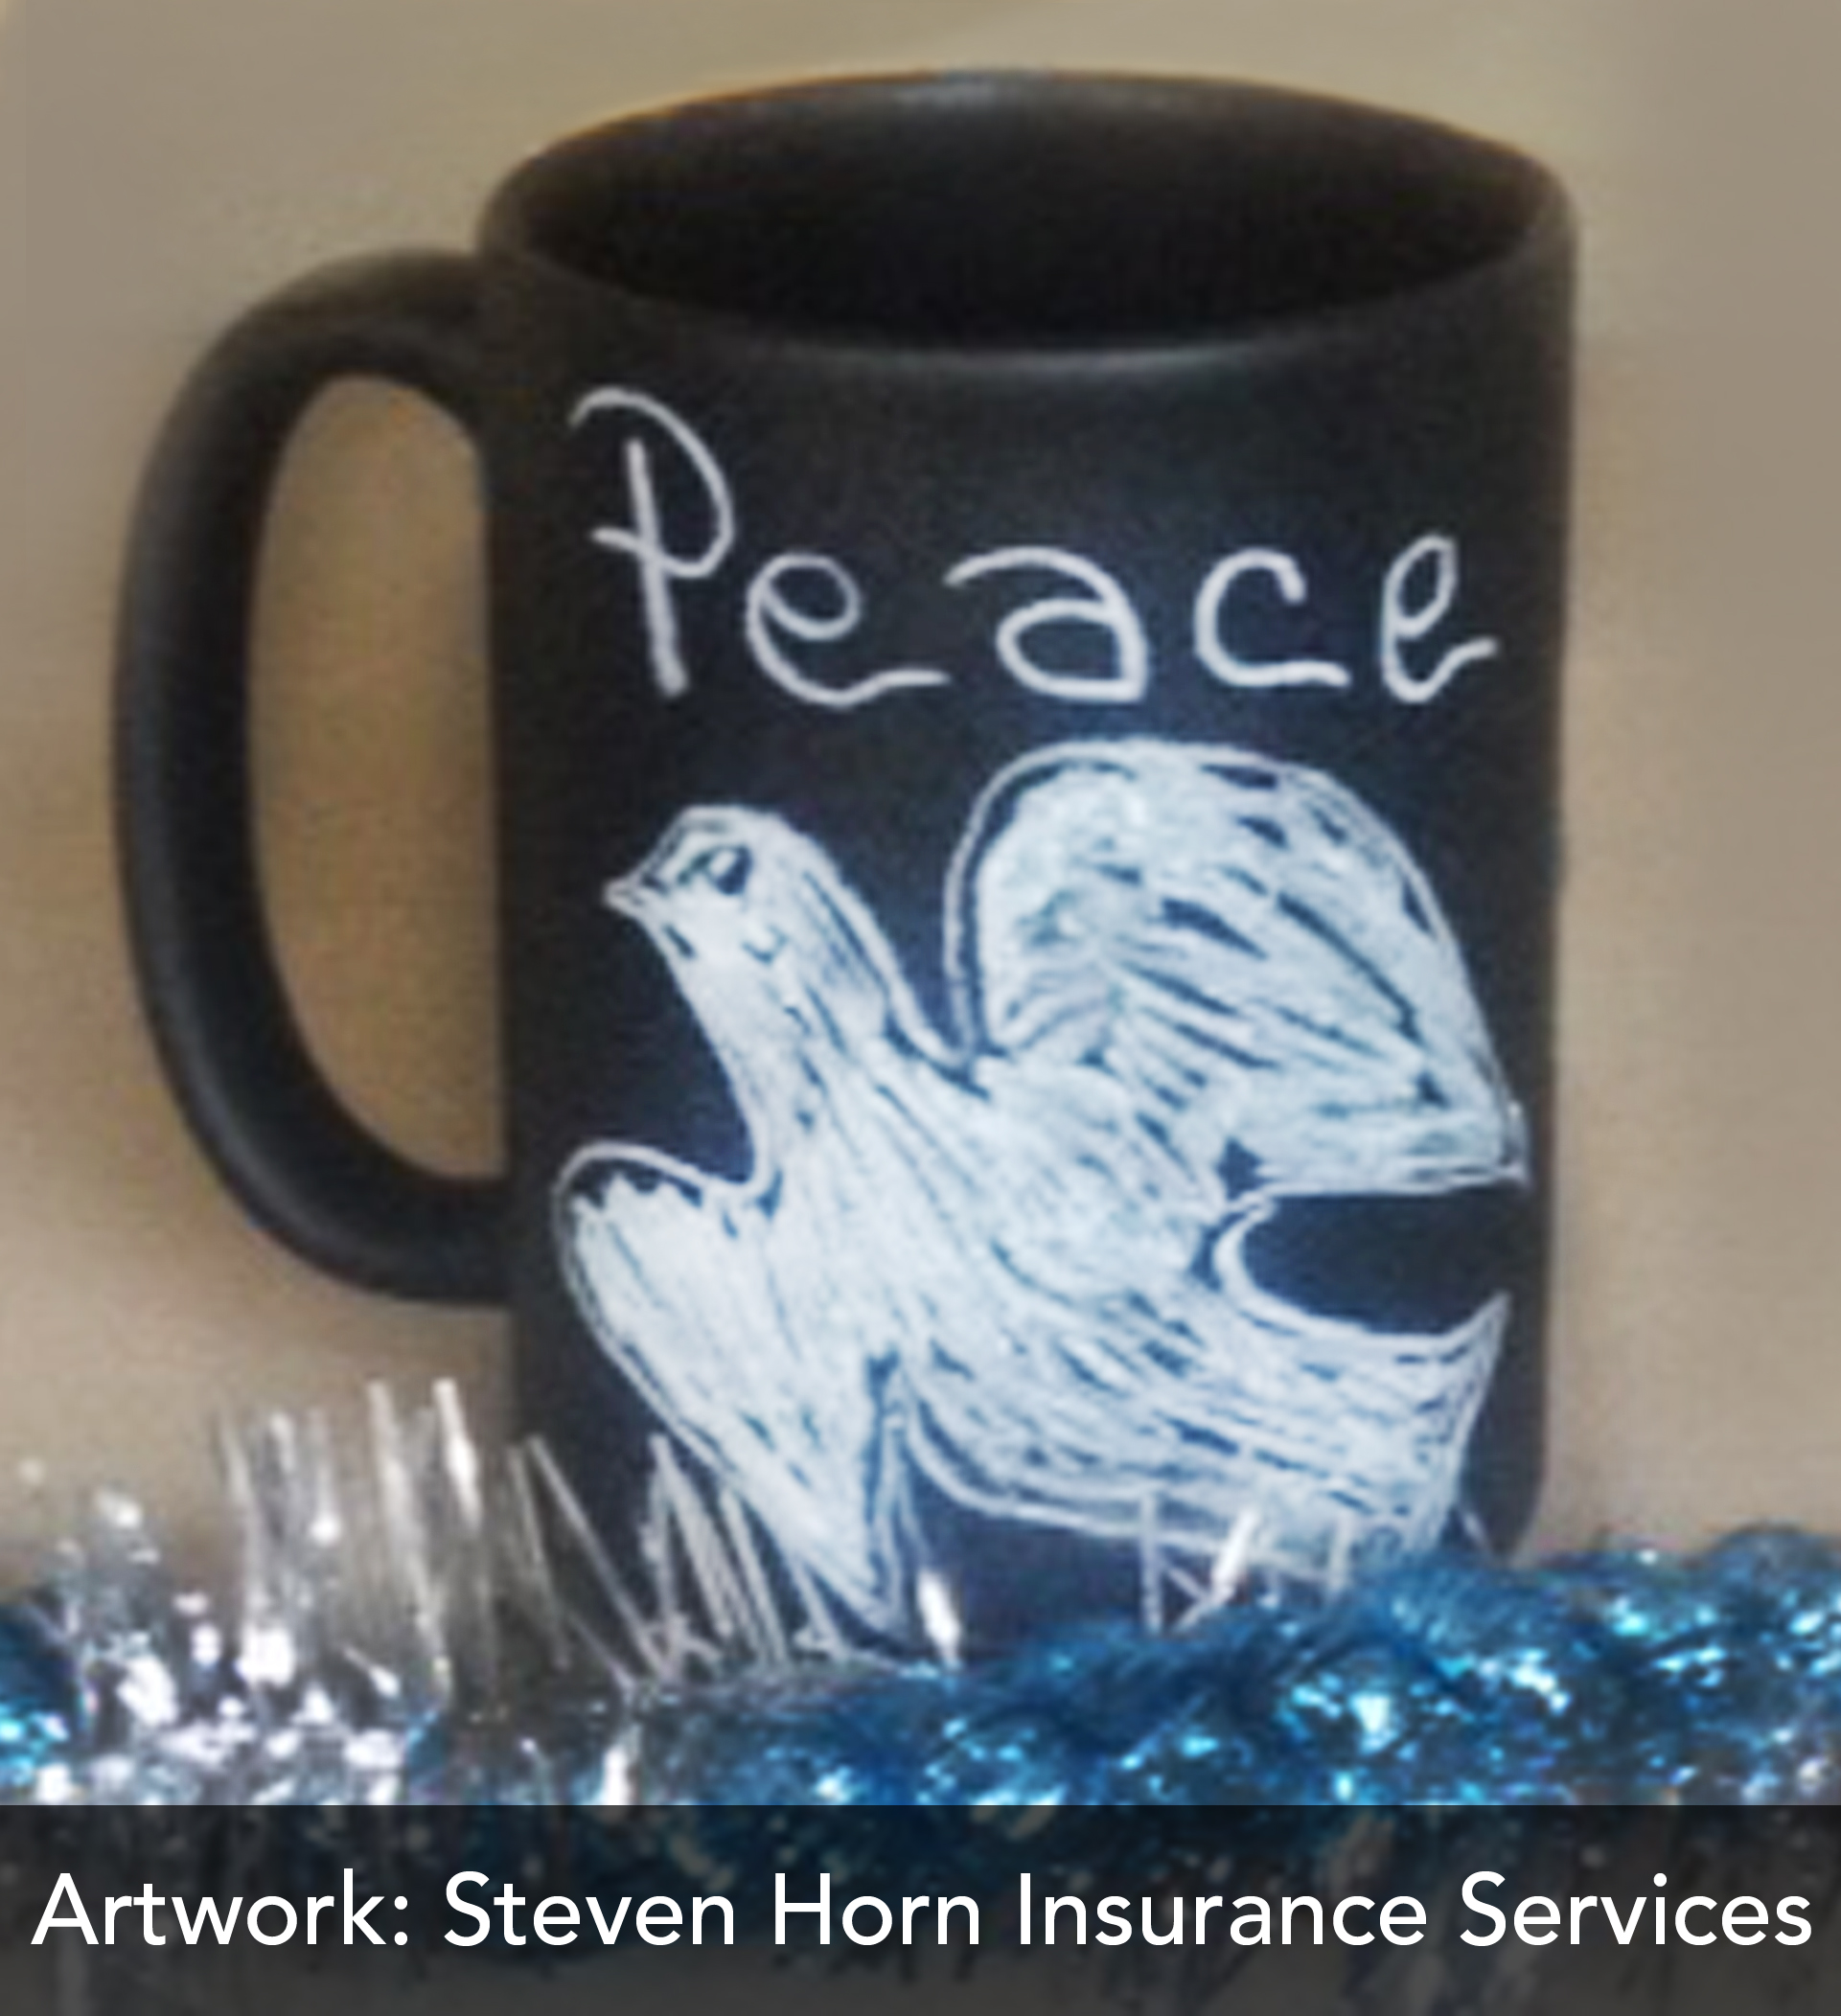 Steven Horn Insurance